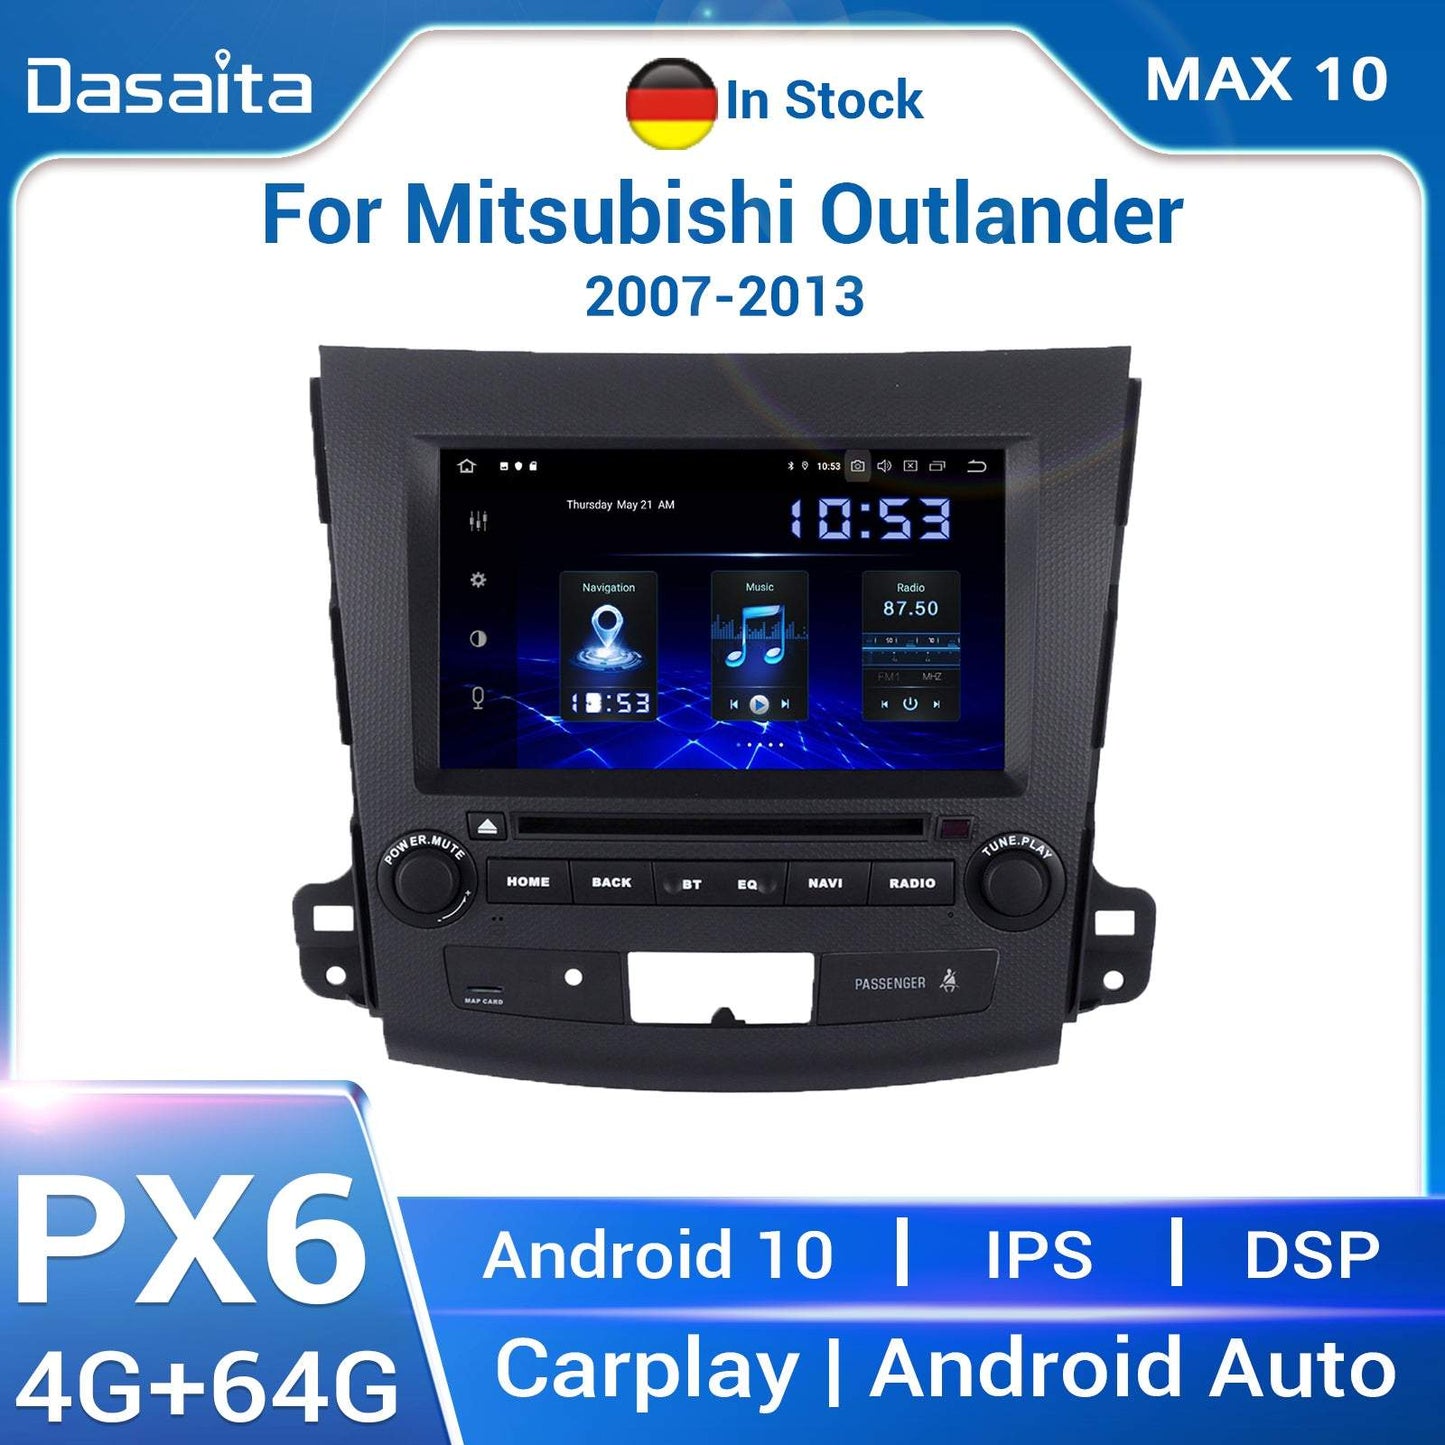 Dasaita (Outlets) MAX10 Mitsubishi Outlander 2007 2008 2009 2010 2011 2012 2013 Car Stereo 8" Carplay Android Auto 4+64G Android10 1024*600 DSP Radio